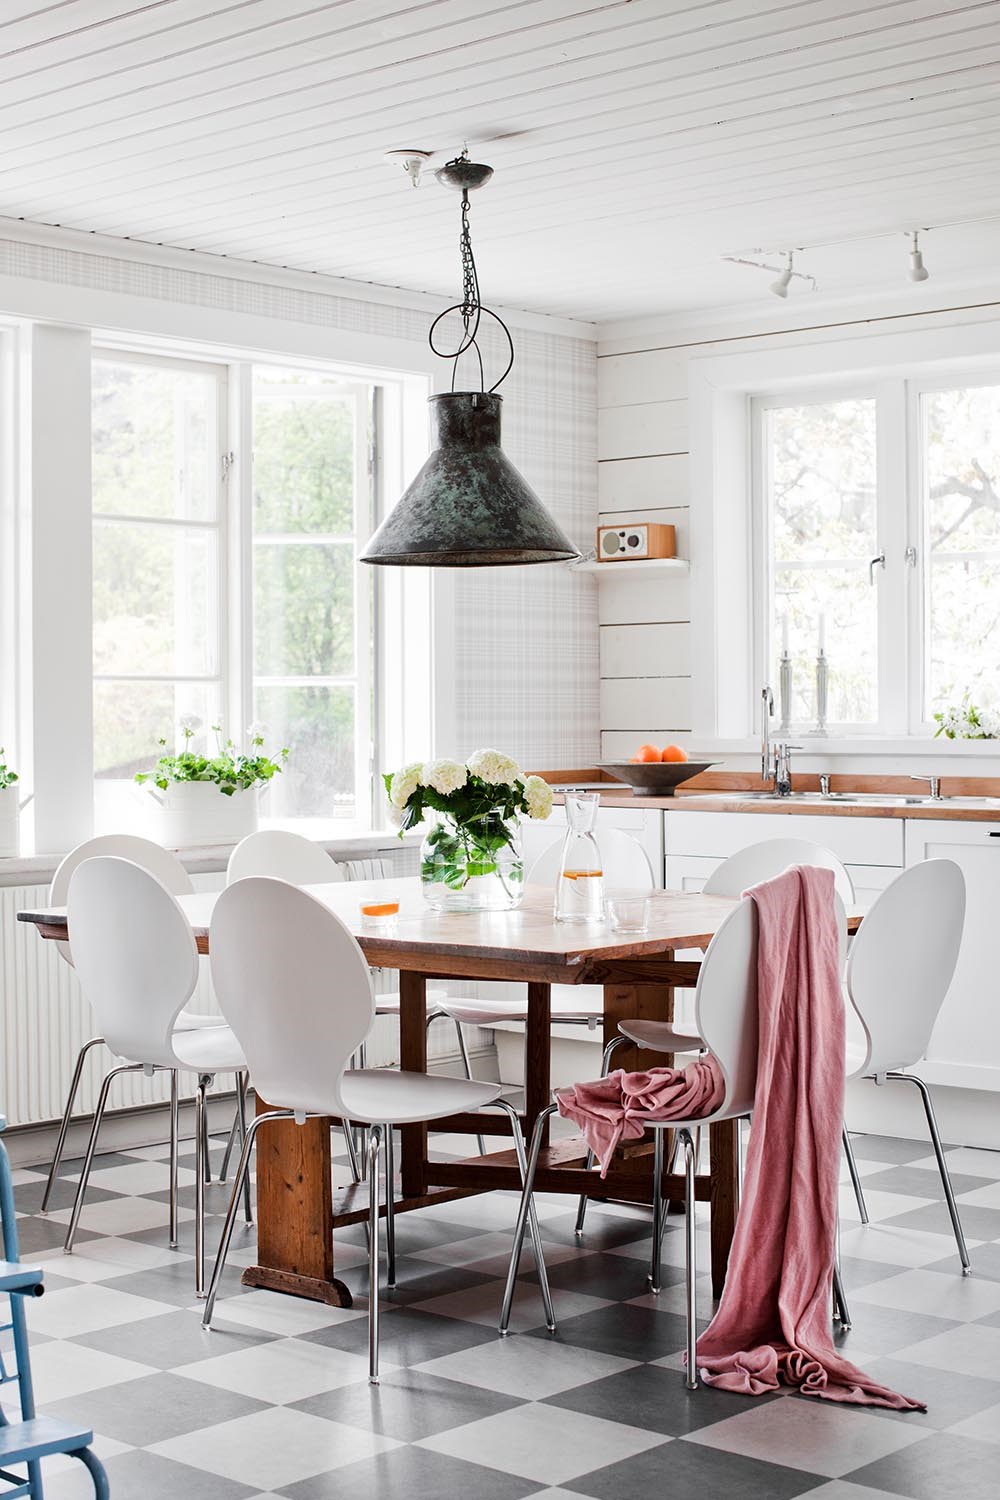 Modern Kitchen Design – 15 Contemporary Kitchen Ideas | Better Homes